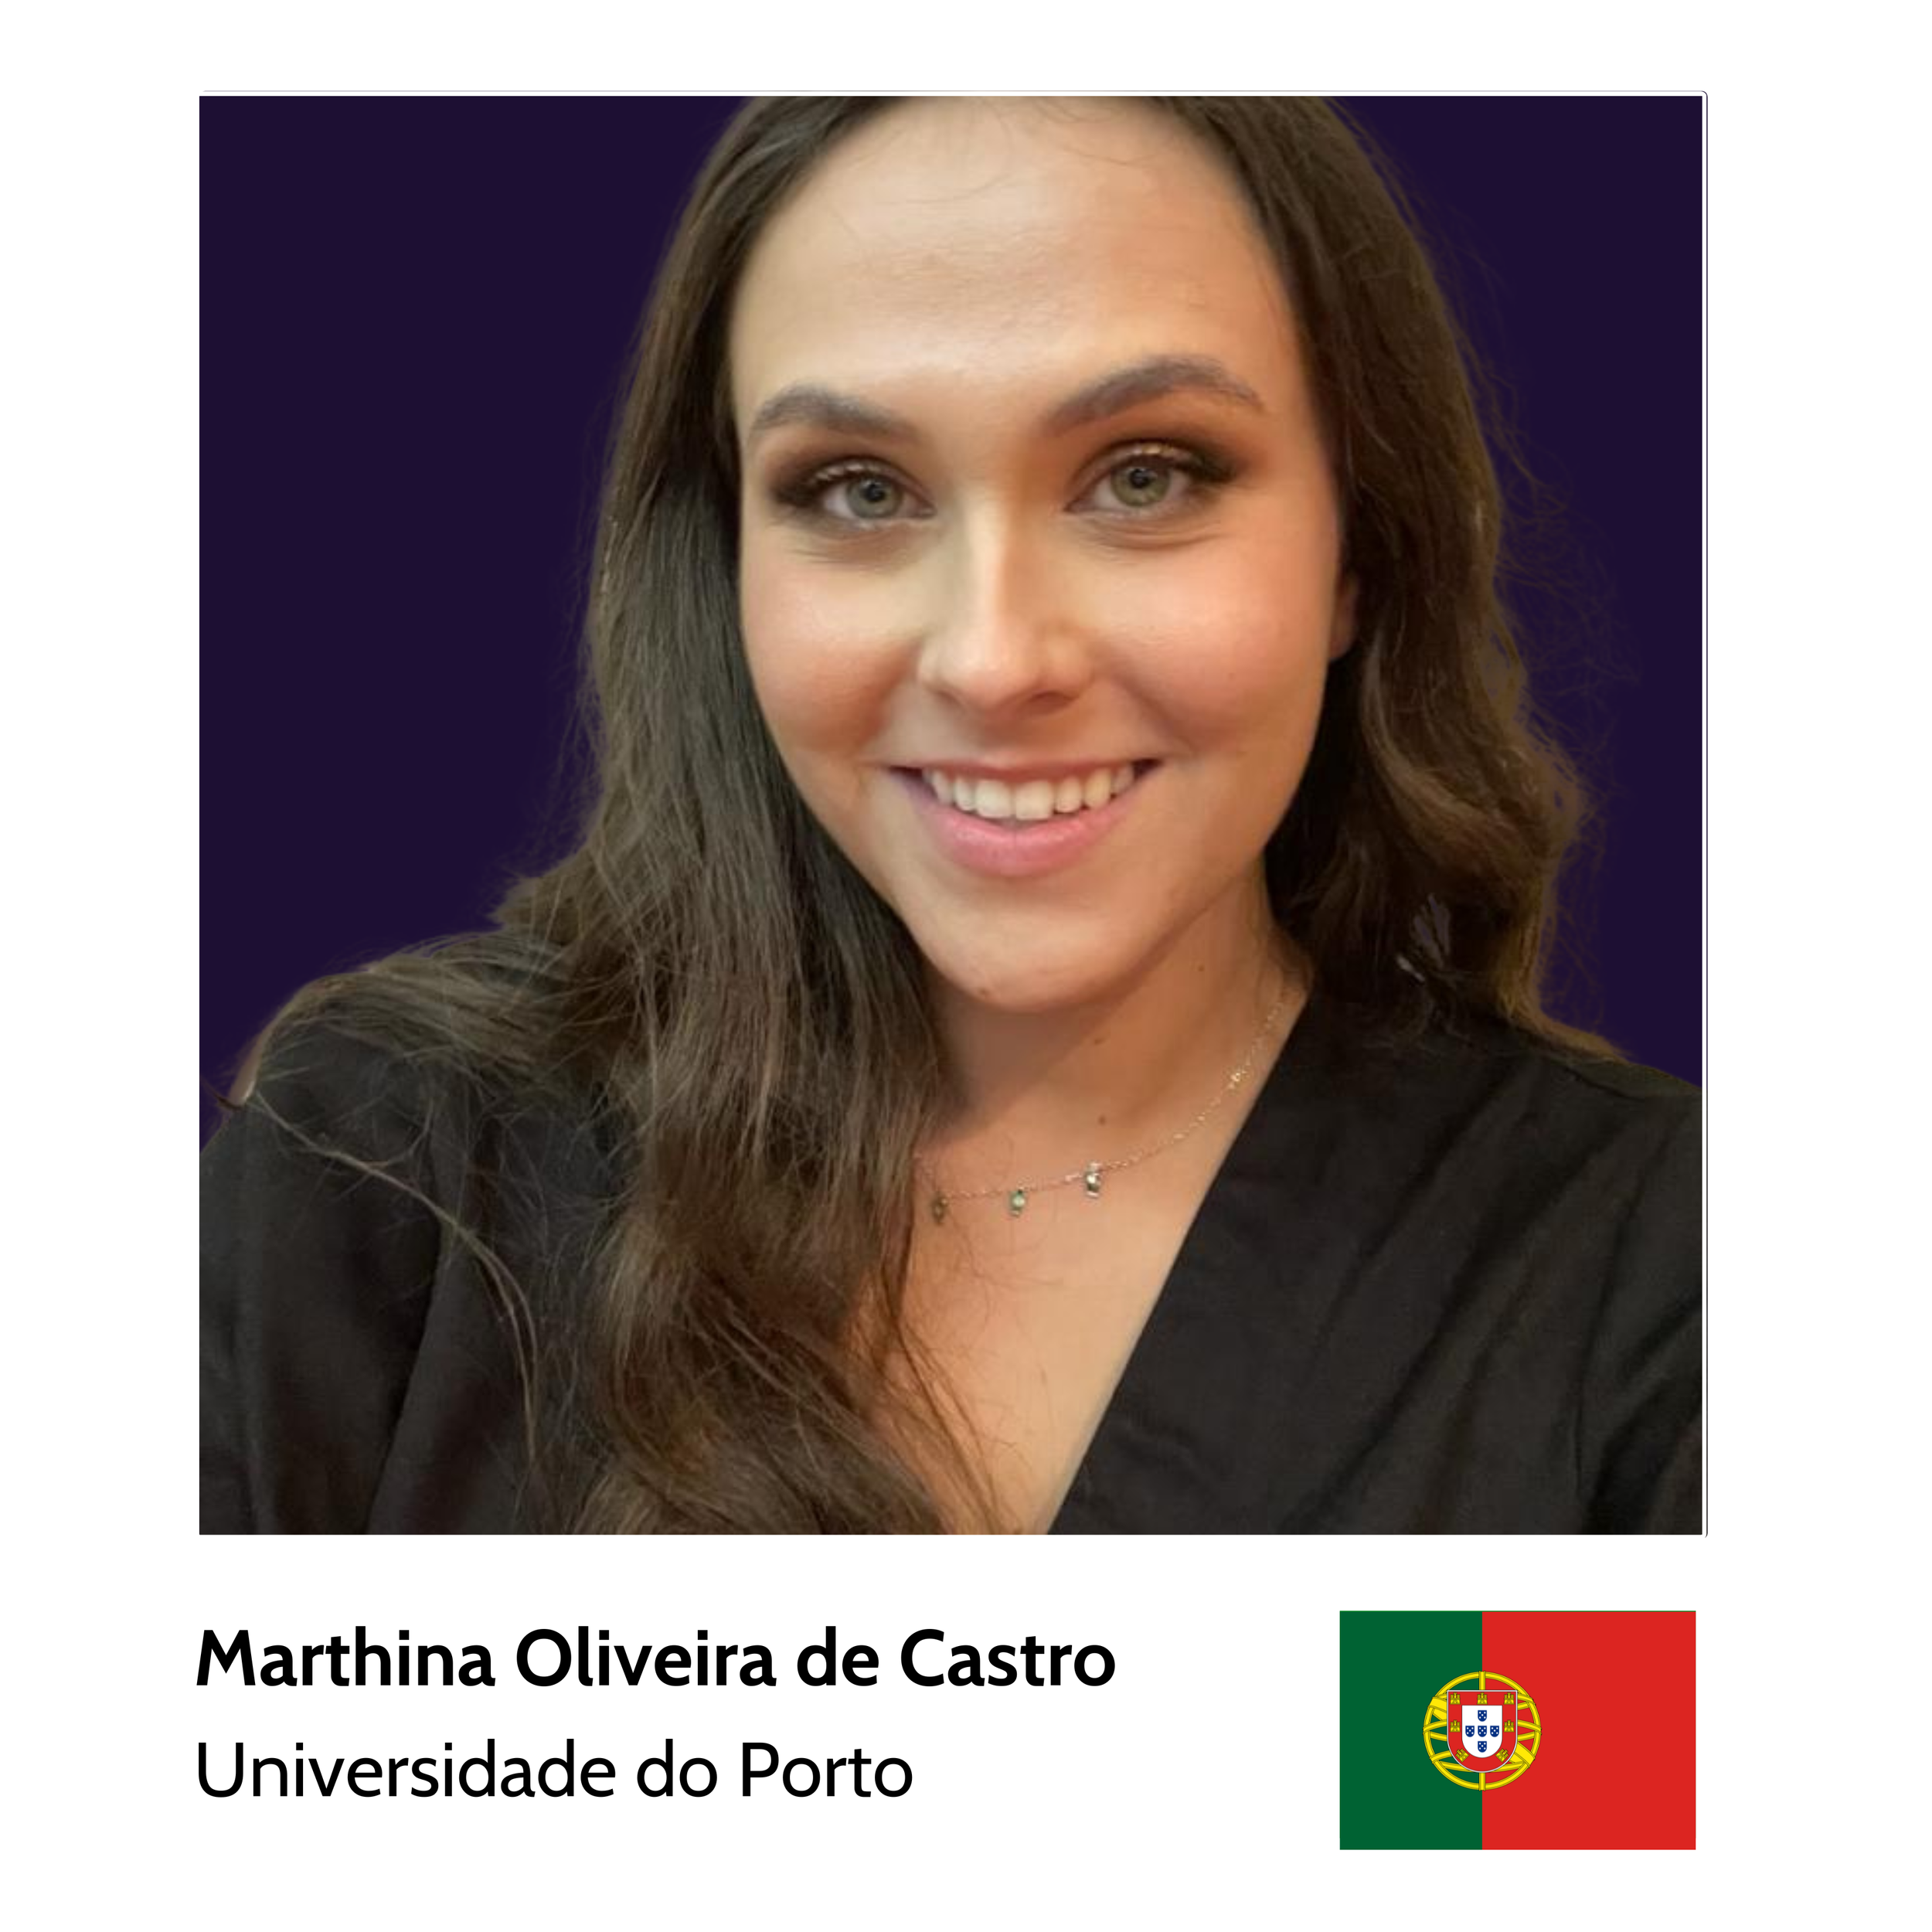 Your_Big_Year_ibm_z_student_ambassador_Marthina_Oliveira_de_Castro_Universidade_do_Porto.png